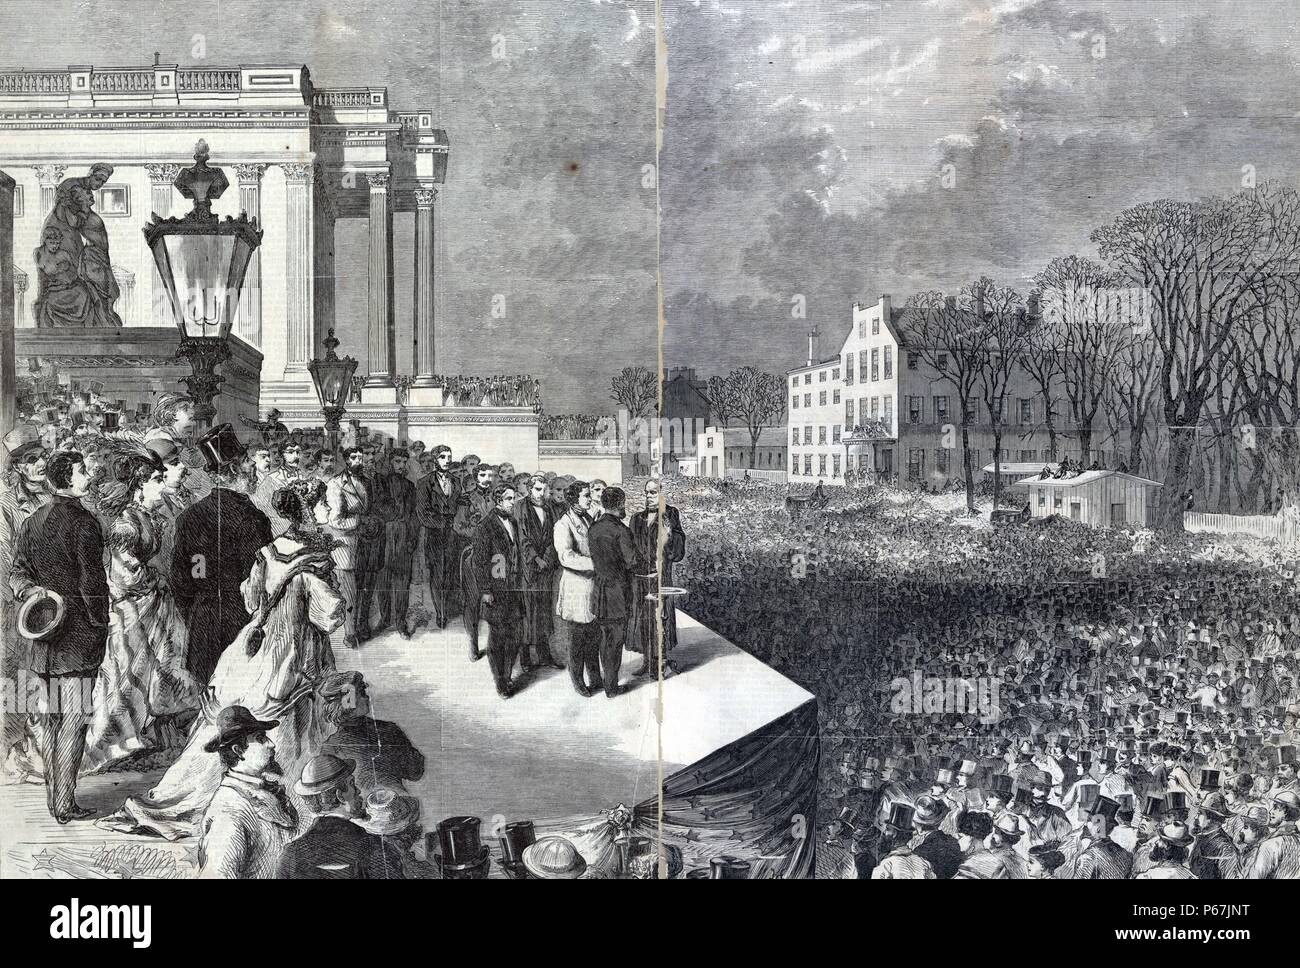 Ulysses S. Grant et Schuyler Colfax prêtant serment administré par le juge en chef Salmon P. Chase sur le portique de l'est le Capitole à Washington, D.C., le 4 mars 1869, à une grande foule. Banque D'Images